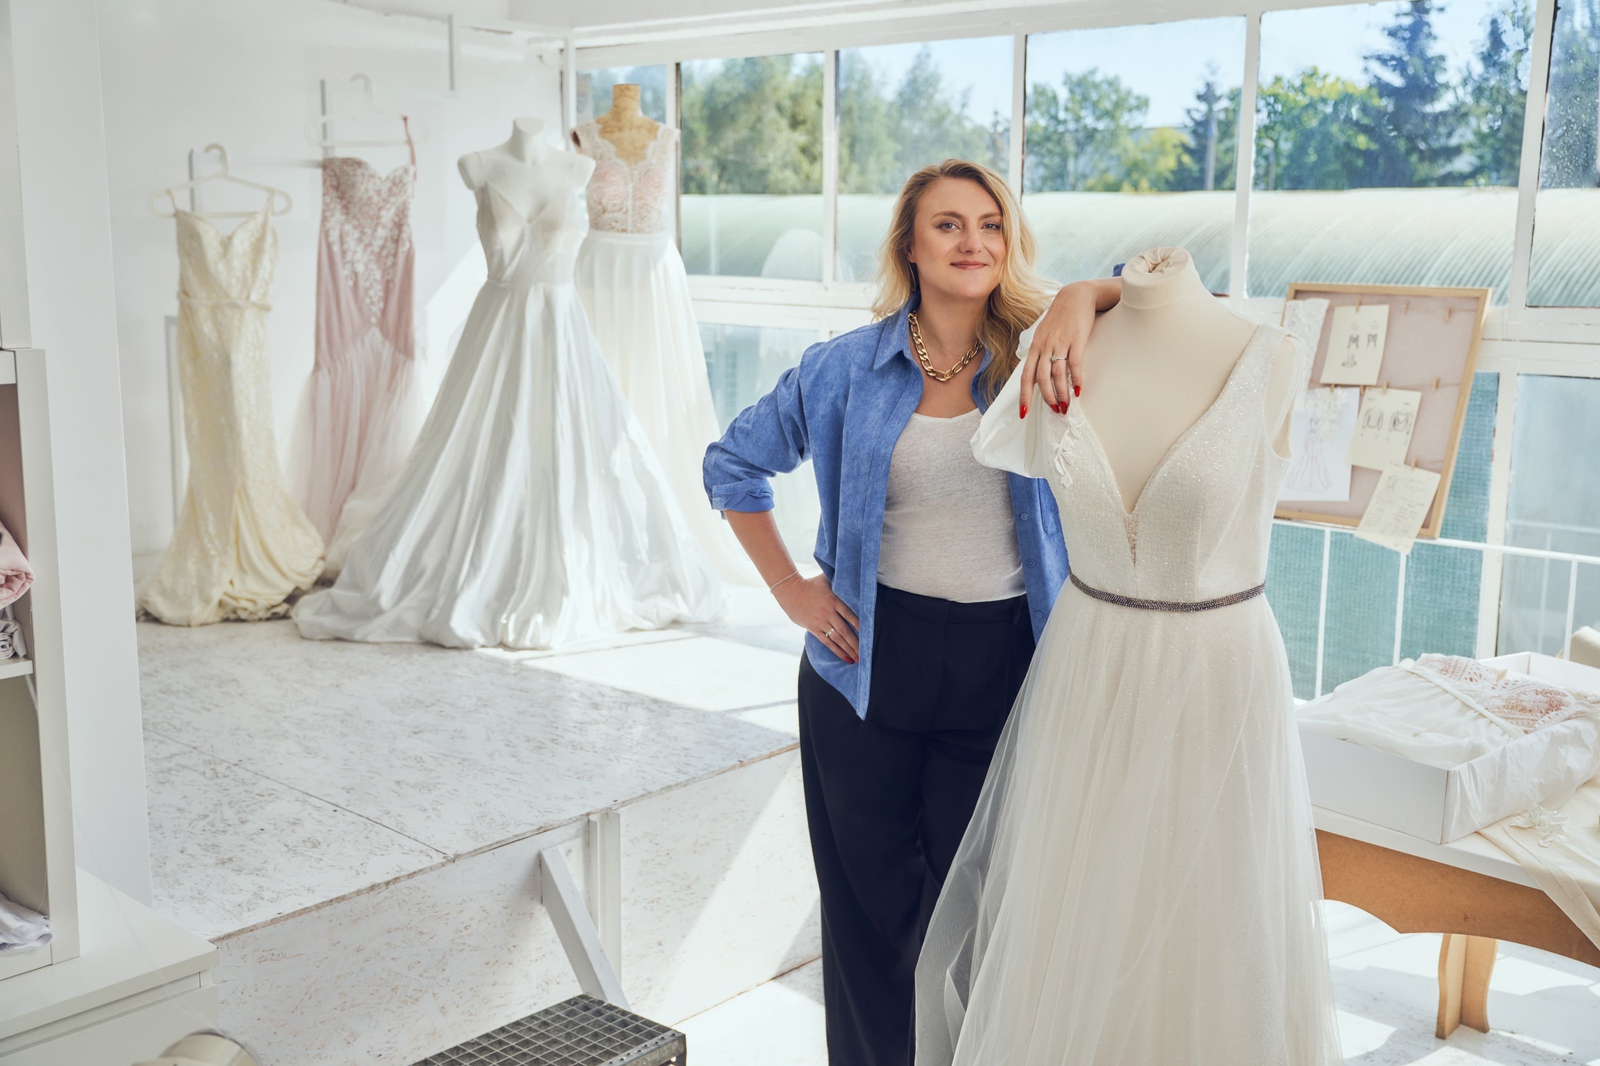 Uczestniczka programu Firmy Jutra, właścicielka Lara Levai w swoim salonie sukien slubnych, stoi uśmiechnięta, oparta o jedną z sukni.